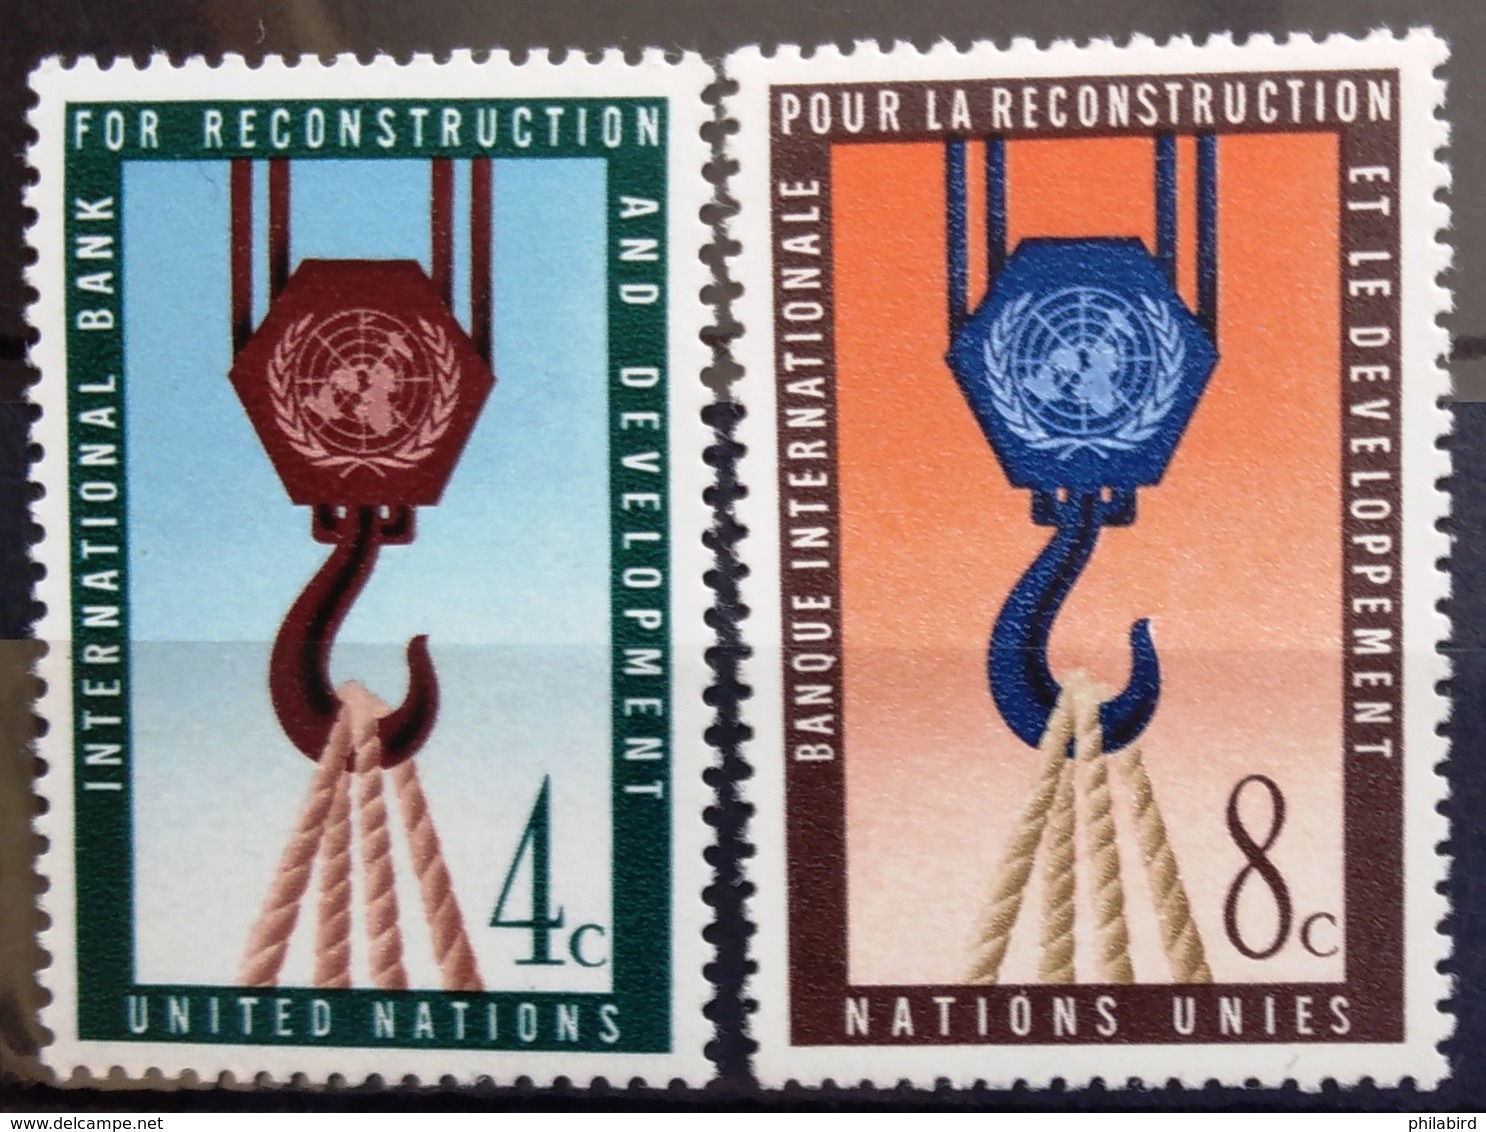 NATIONS-UNIS  NEW YORK                   N° 82/83                      NEUF** - Unused Stamps